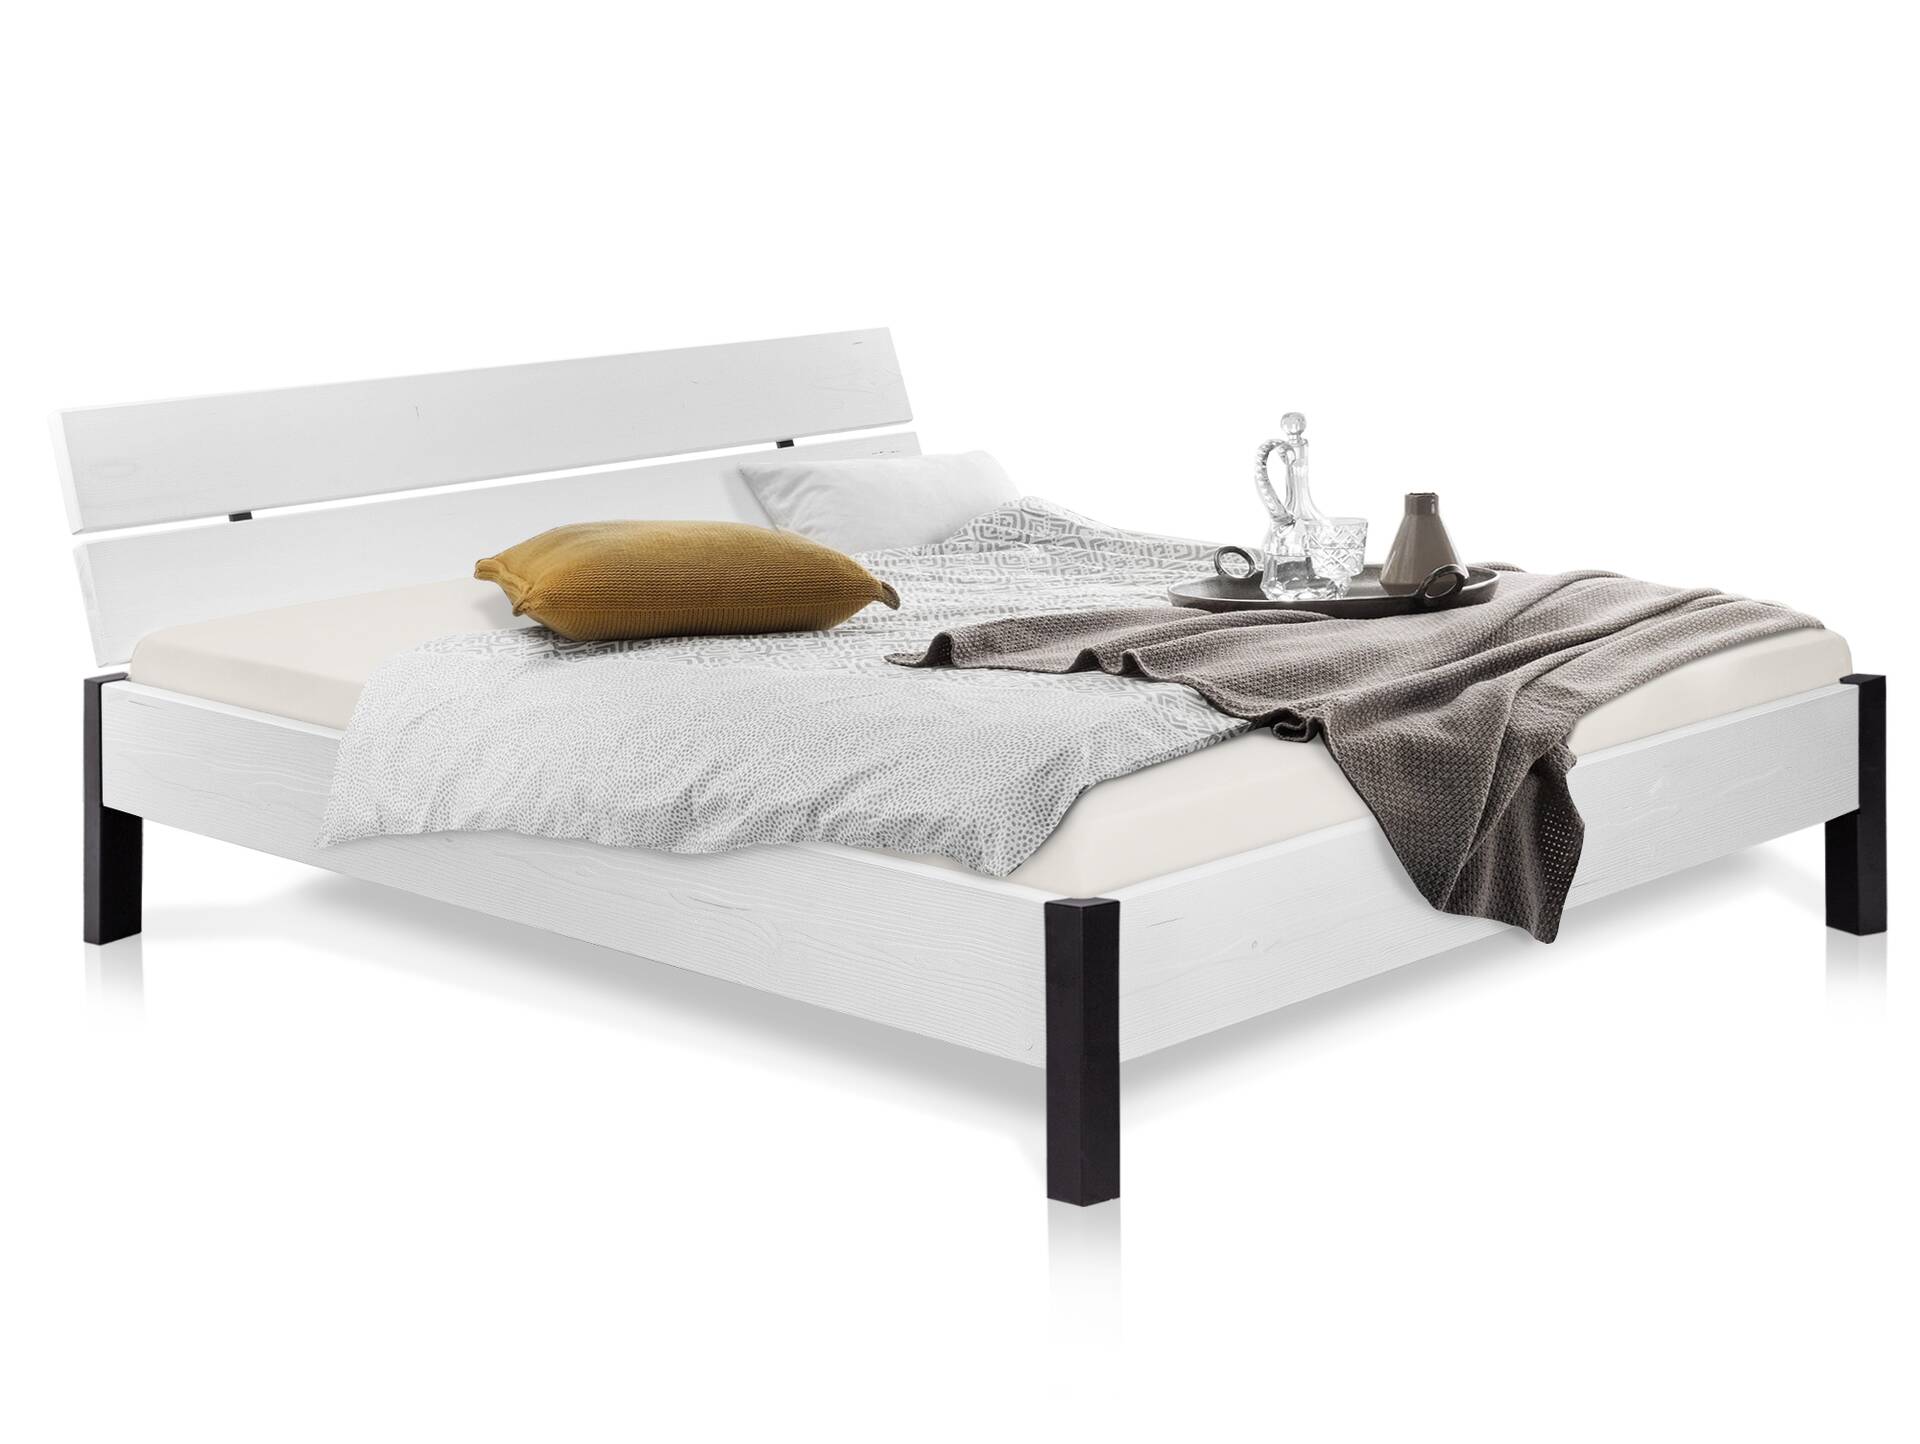 LUKY Bett mit Metallfuß, Material Massivholz, Fichte weiss, mit Kopfteil 120 x 200 cm